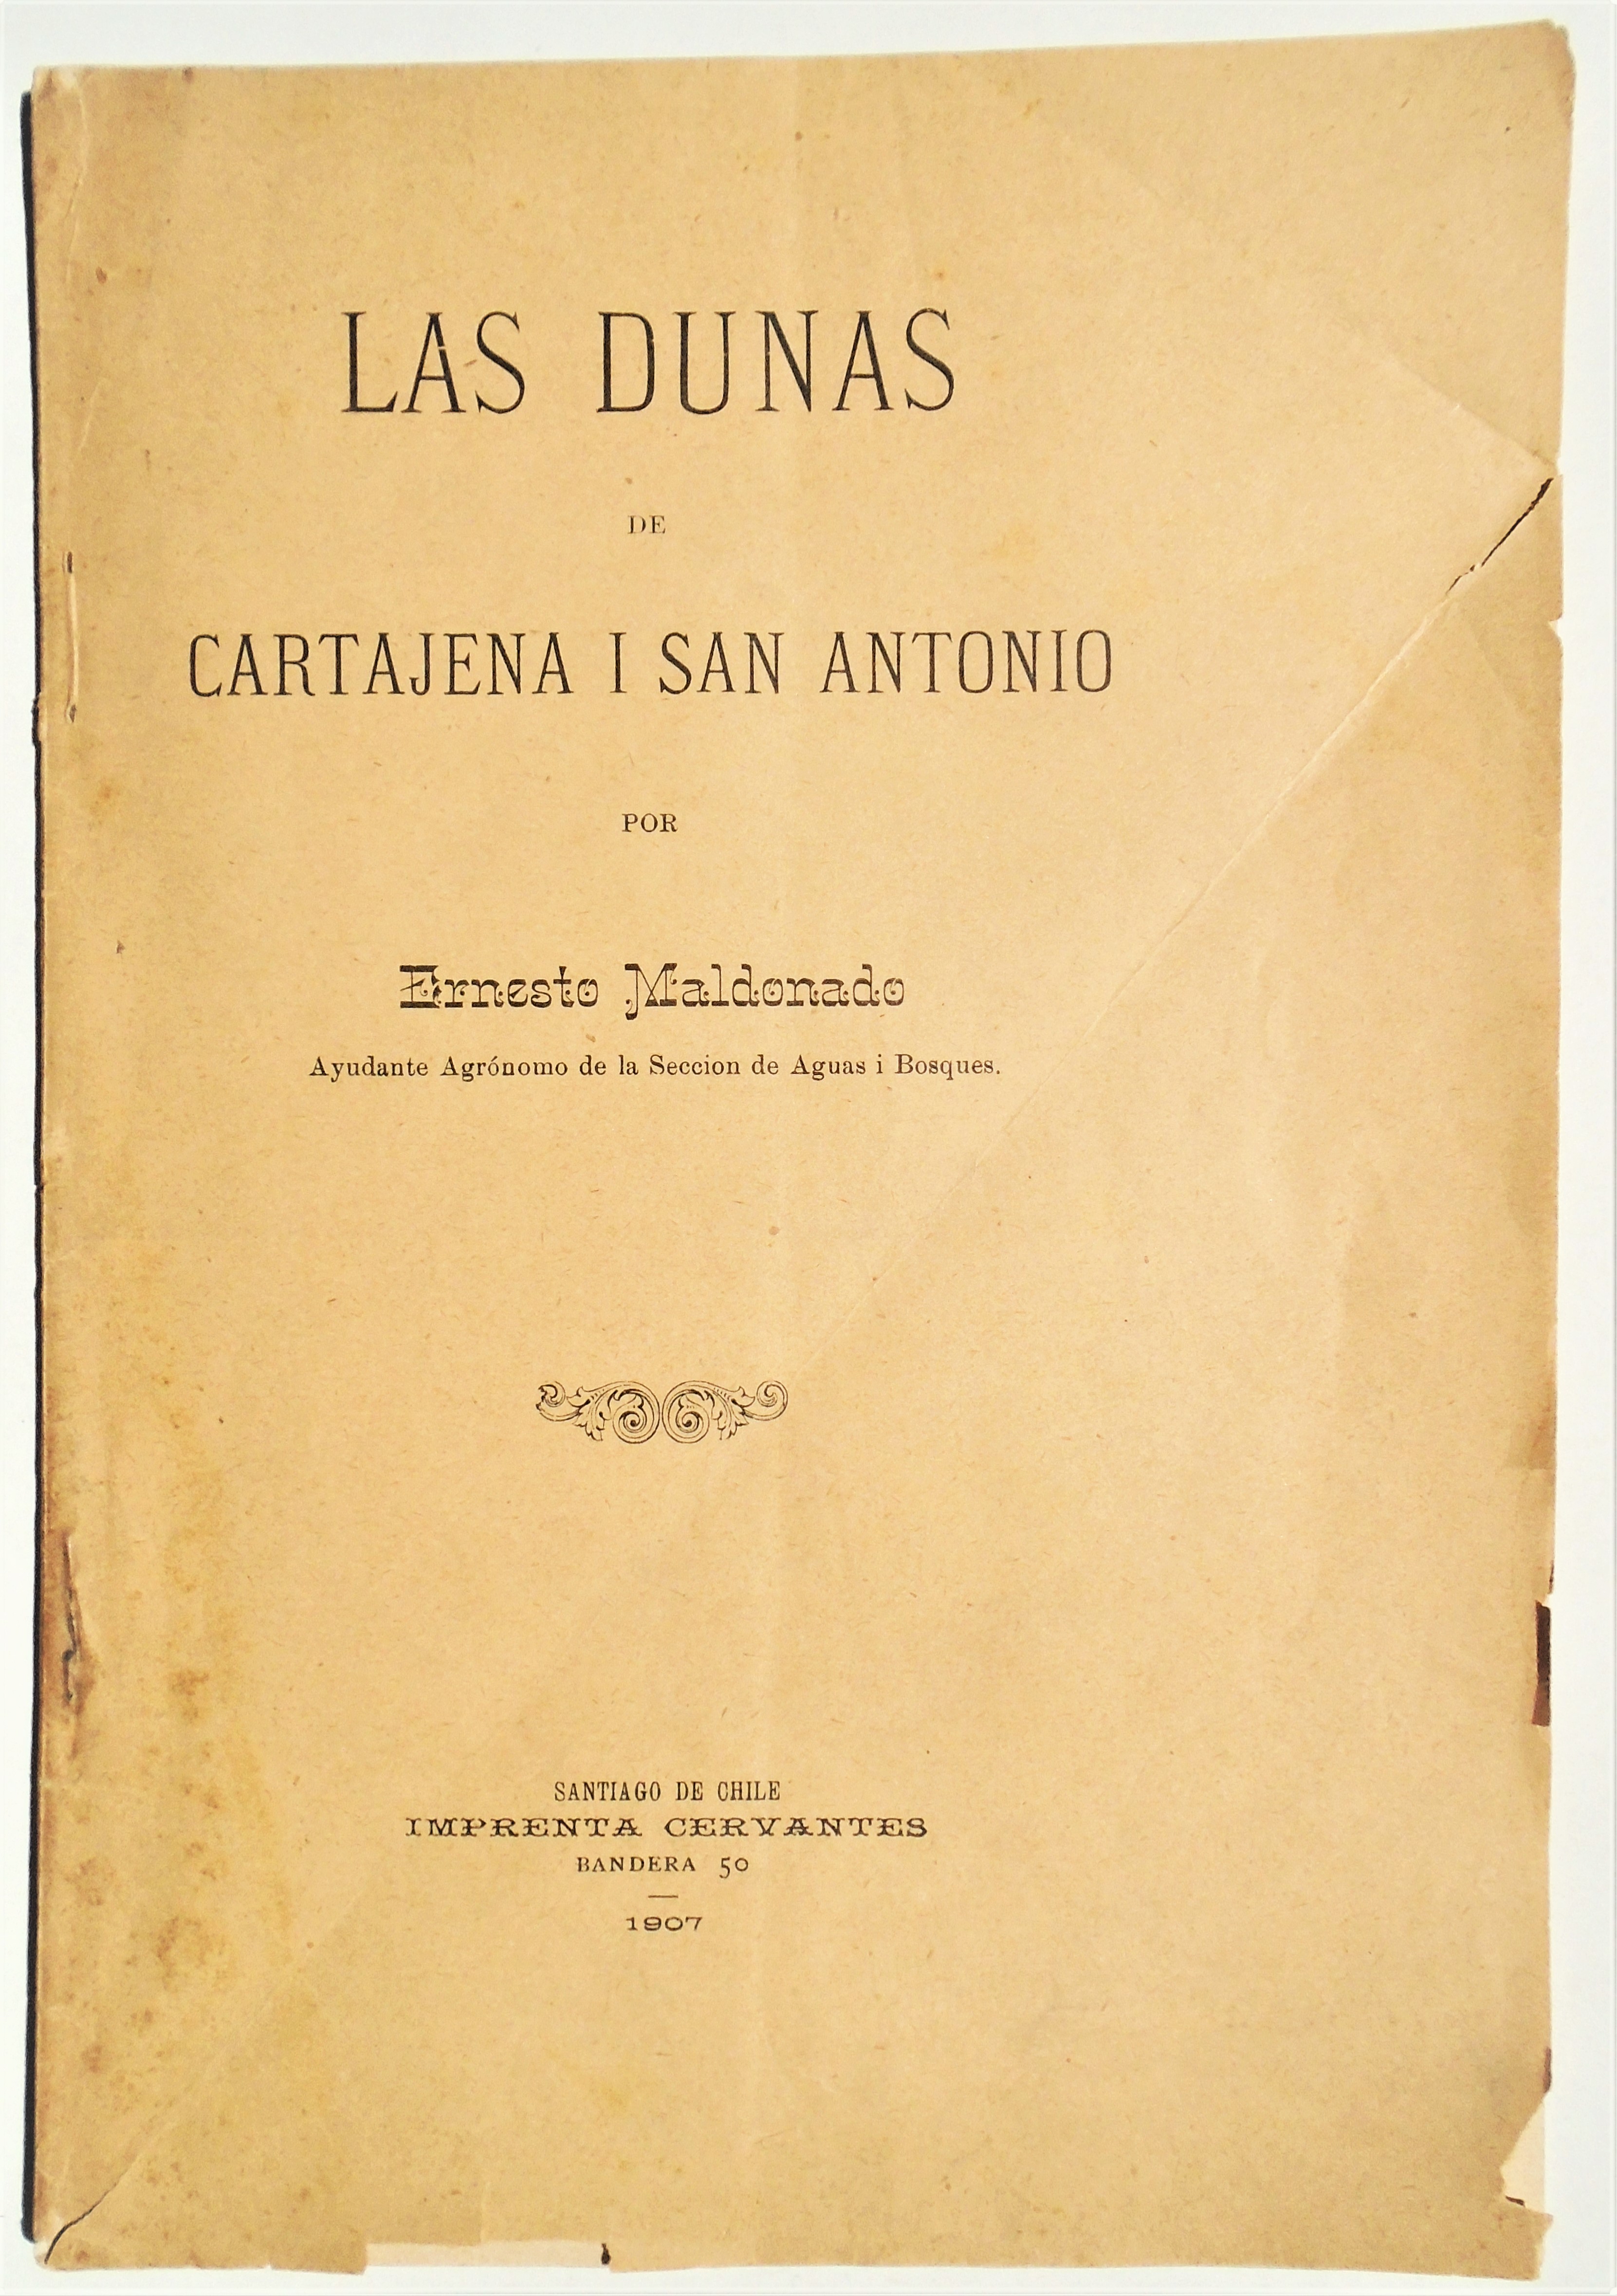 Ernesto Maldonado - Las dunas de Cartajena i San Antonio